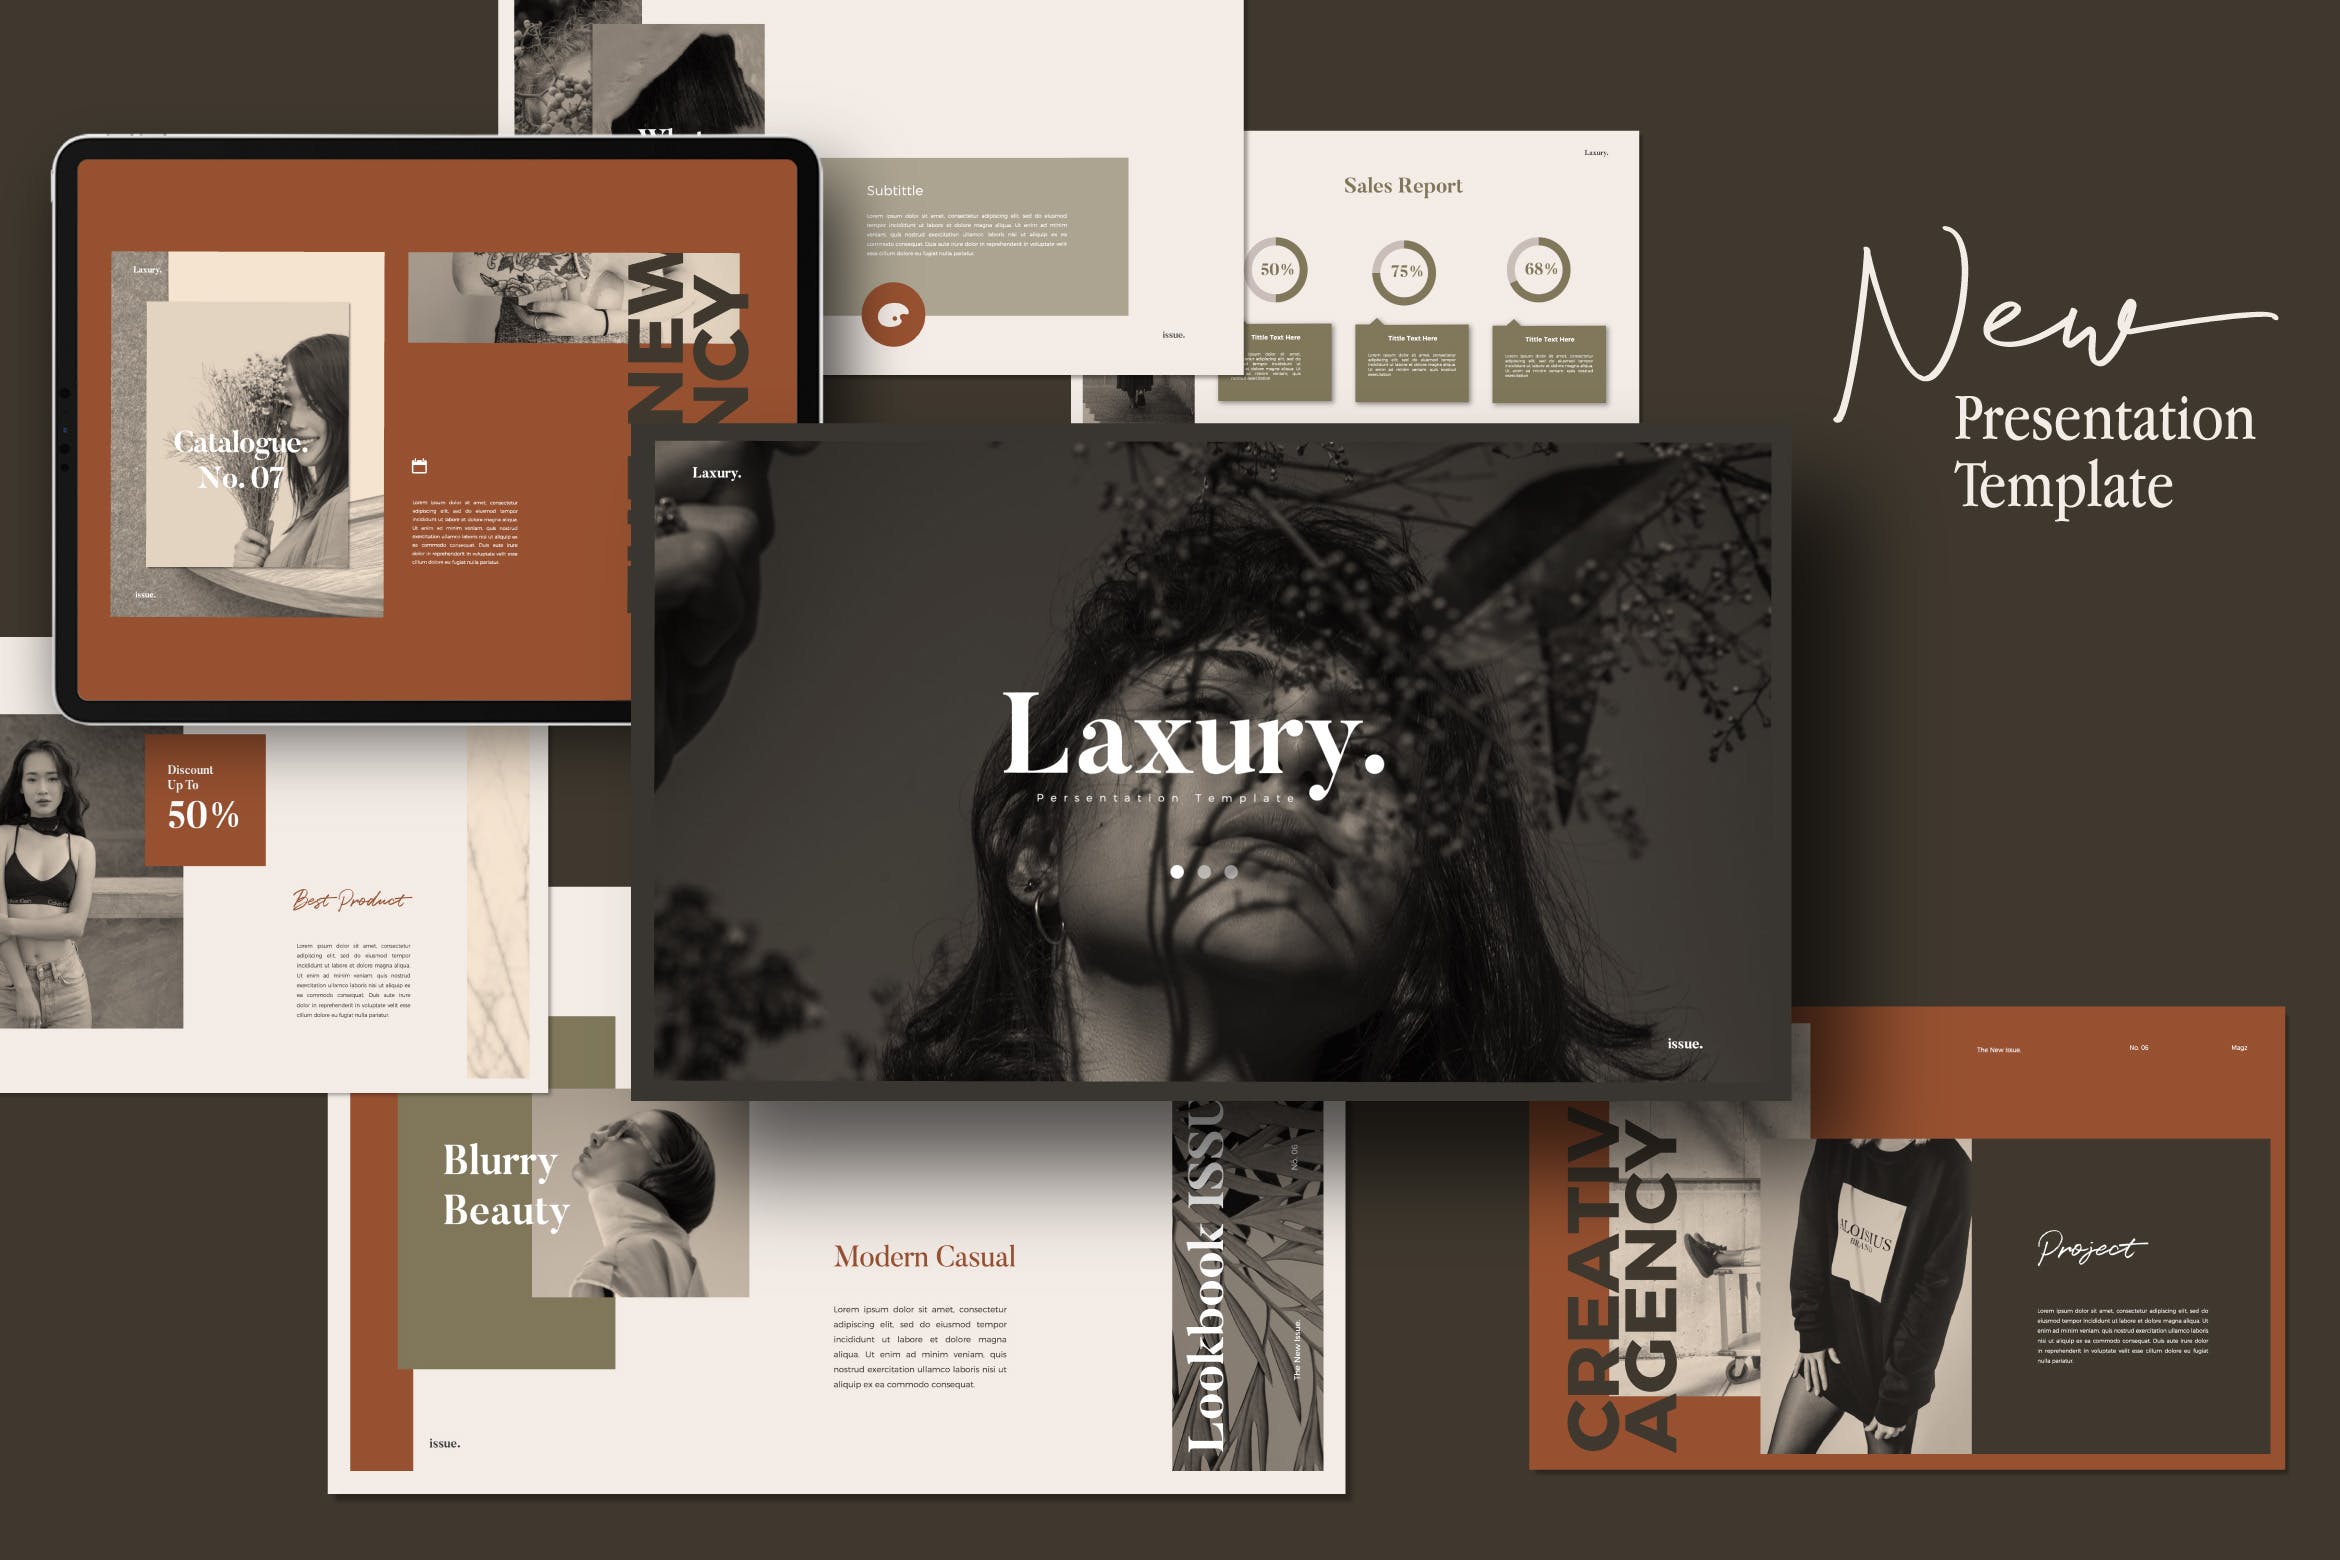 时尚企业介绍/Lookbook新品上市发布大洋岛精选PPT模板 LAXURY – Lookbook Fashion Powerpoint Creative插图